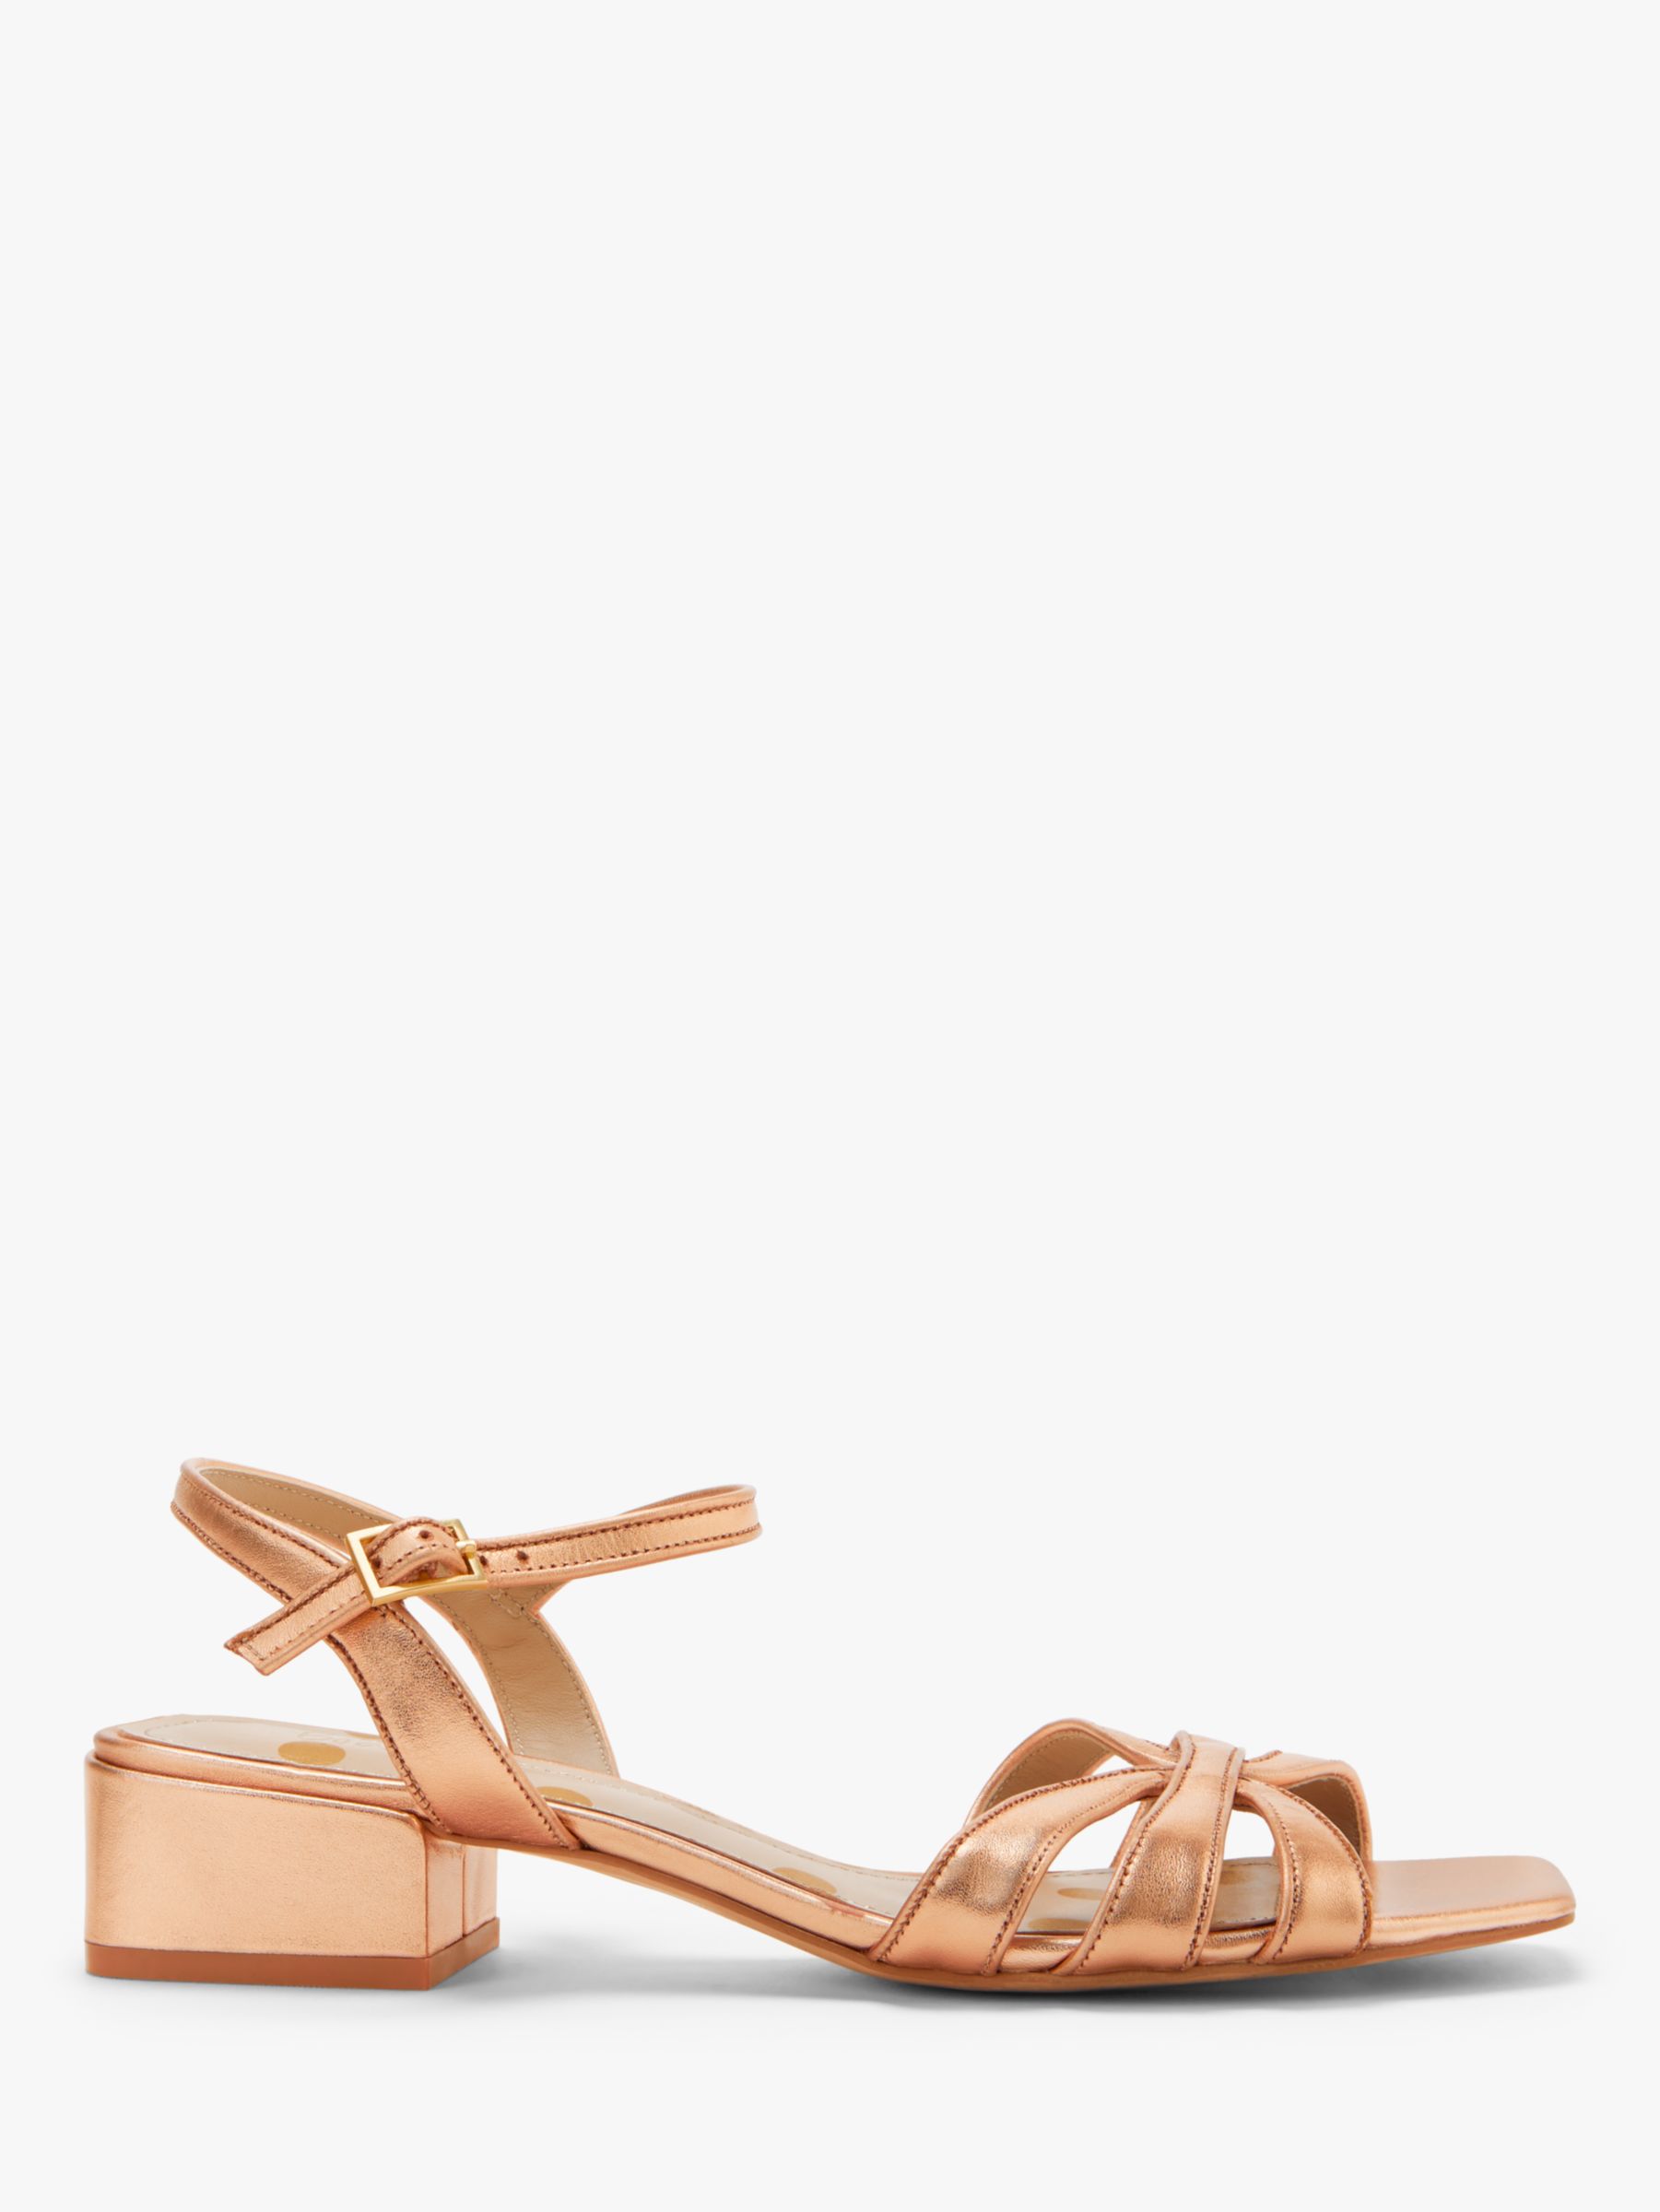 gold low block heel sandals